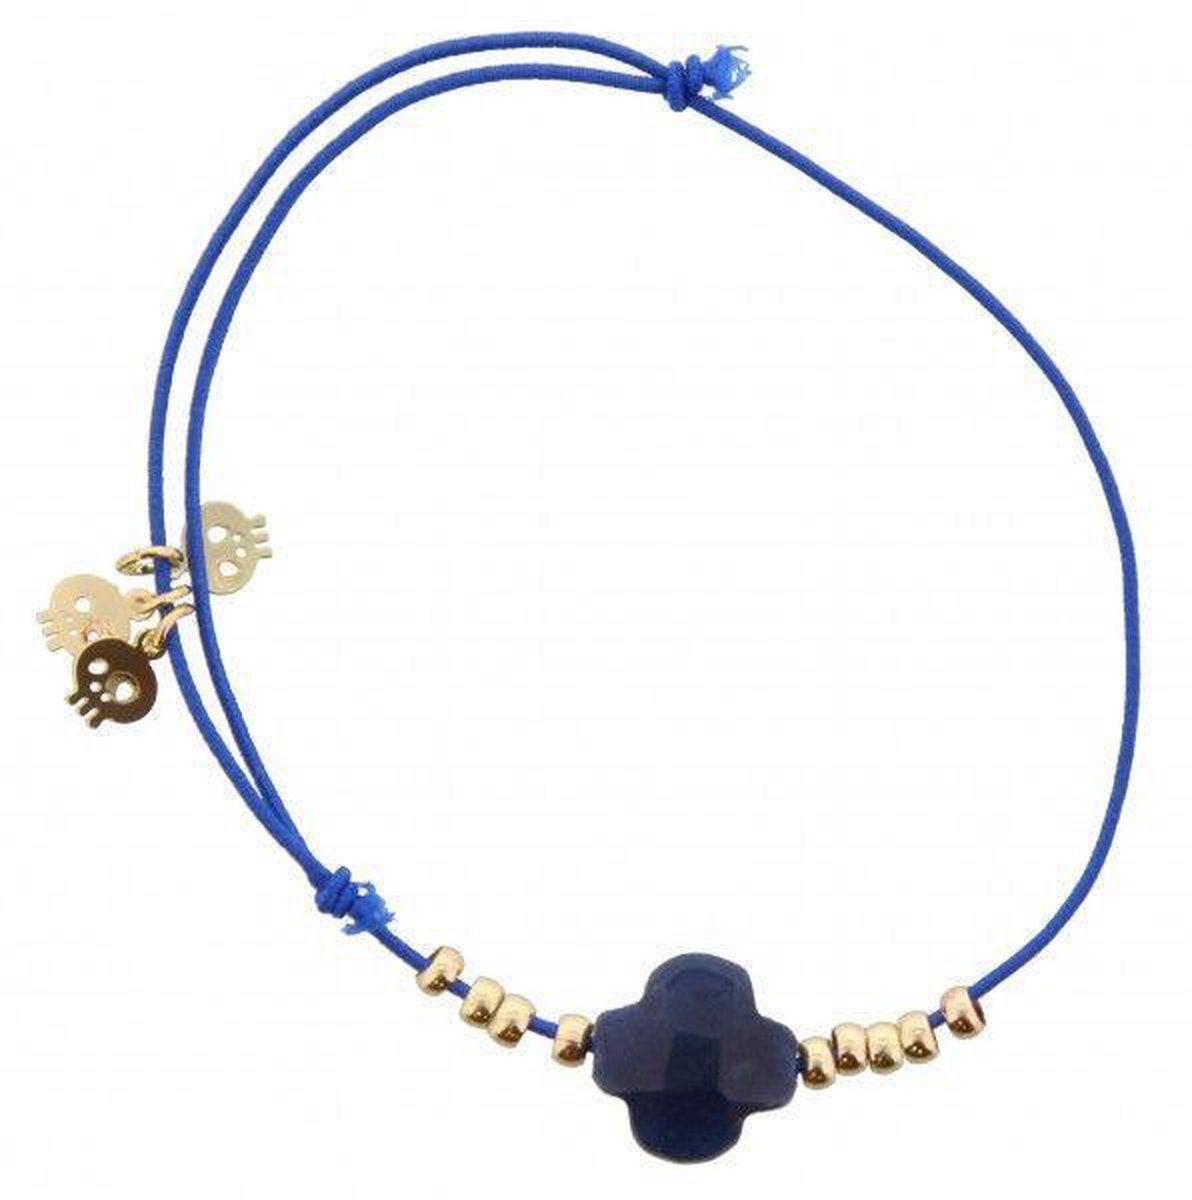 omvang Verstrooien Belastingen Blauwe touwtjes armband met gouden bedels | bol.com